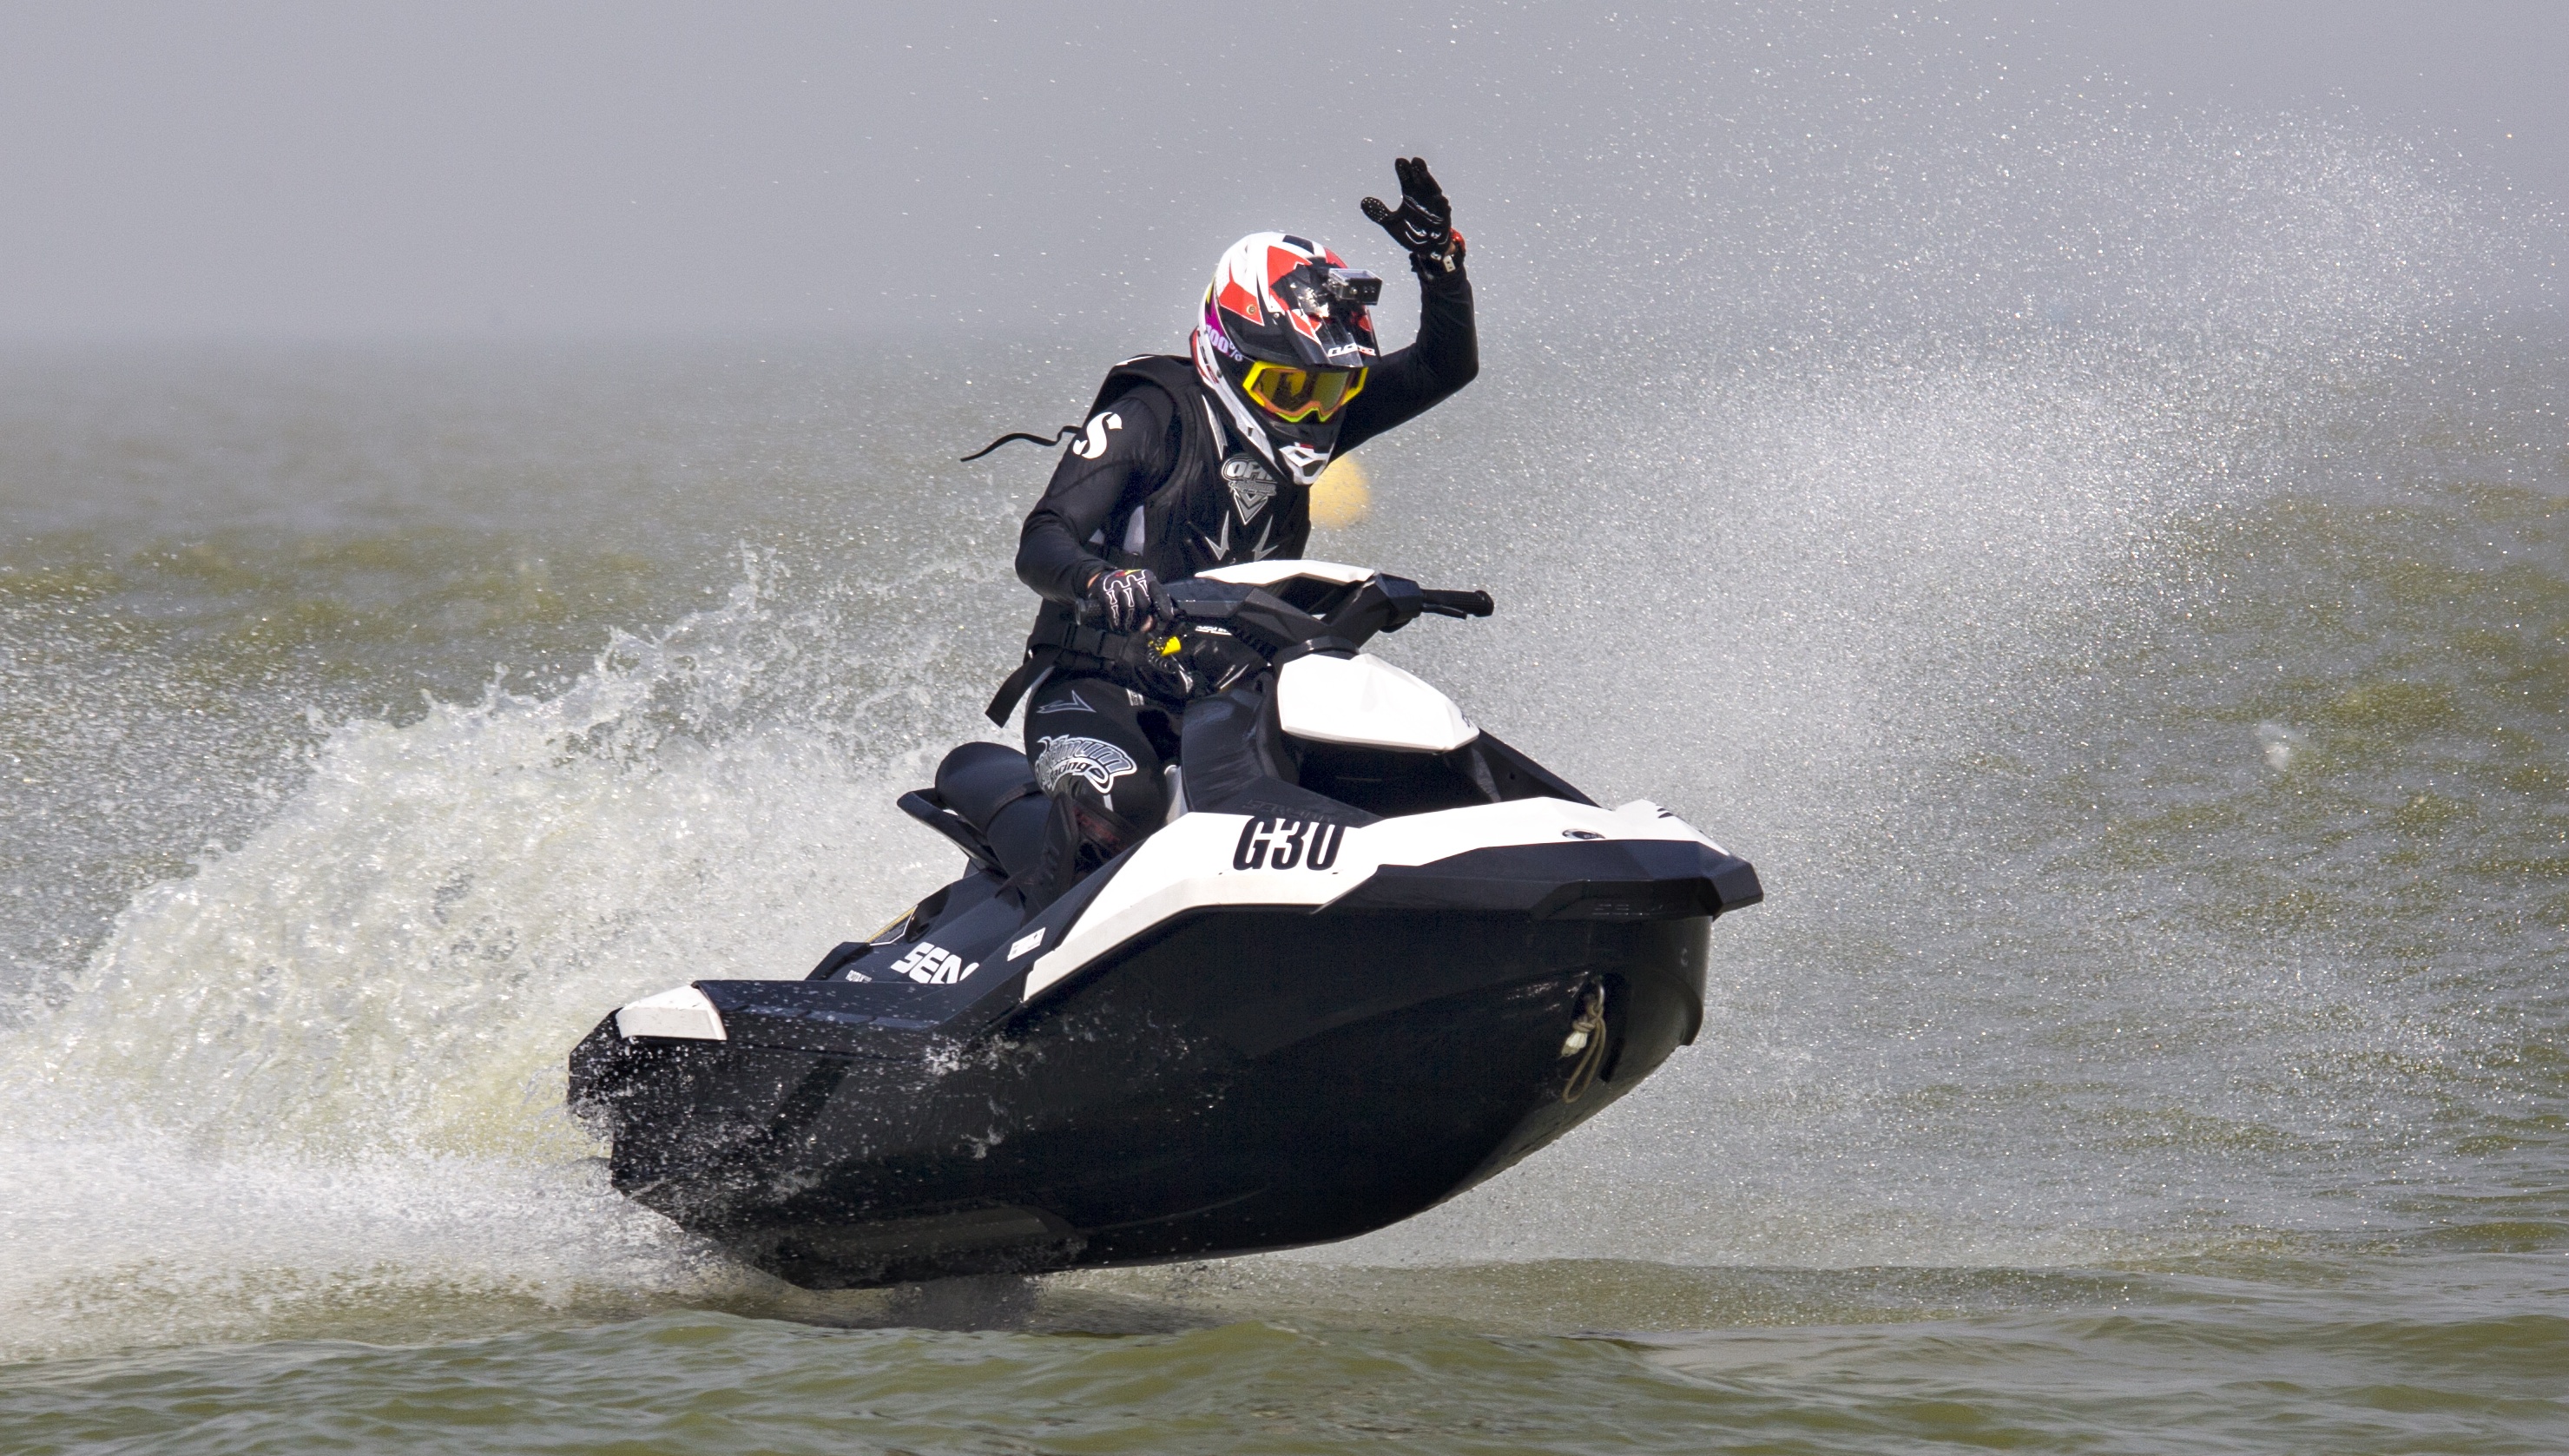 低价出售2013年庞巴迪215马力摩托艇